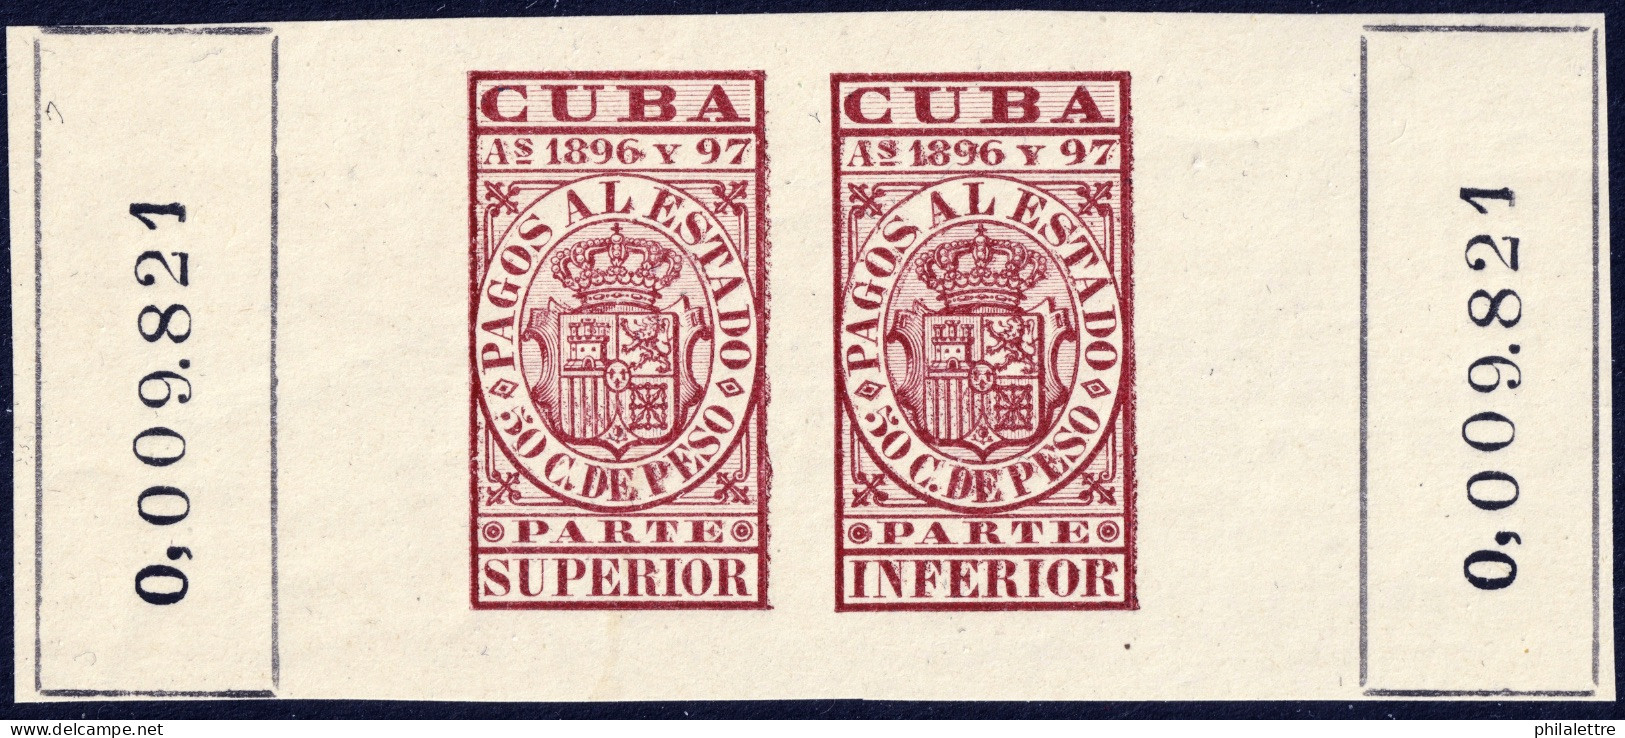 ESPAGNE / ESPANA - COLONIAS (Cuba) 1896/97 "PAGOS AL ESTADO" Fulcher 1164+1176 50c Sello Doble Nuevo** (0.009.821) - Cuba (1874-1898)